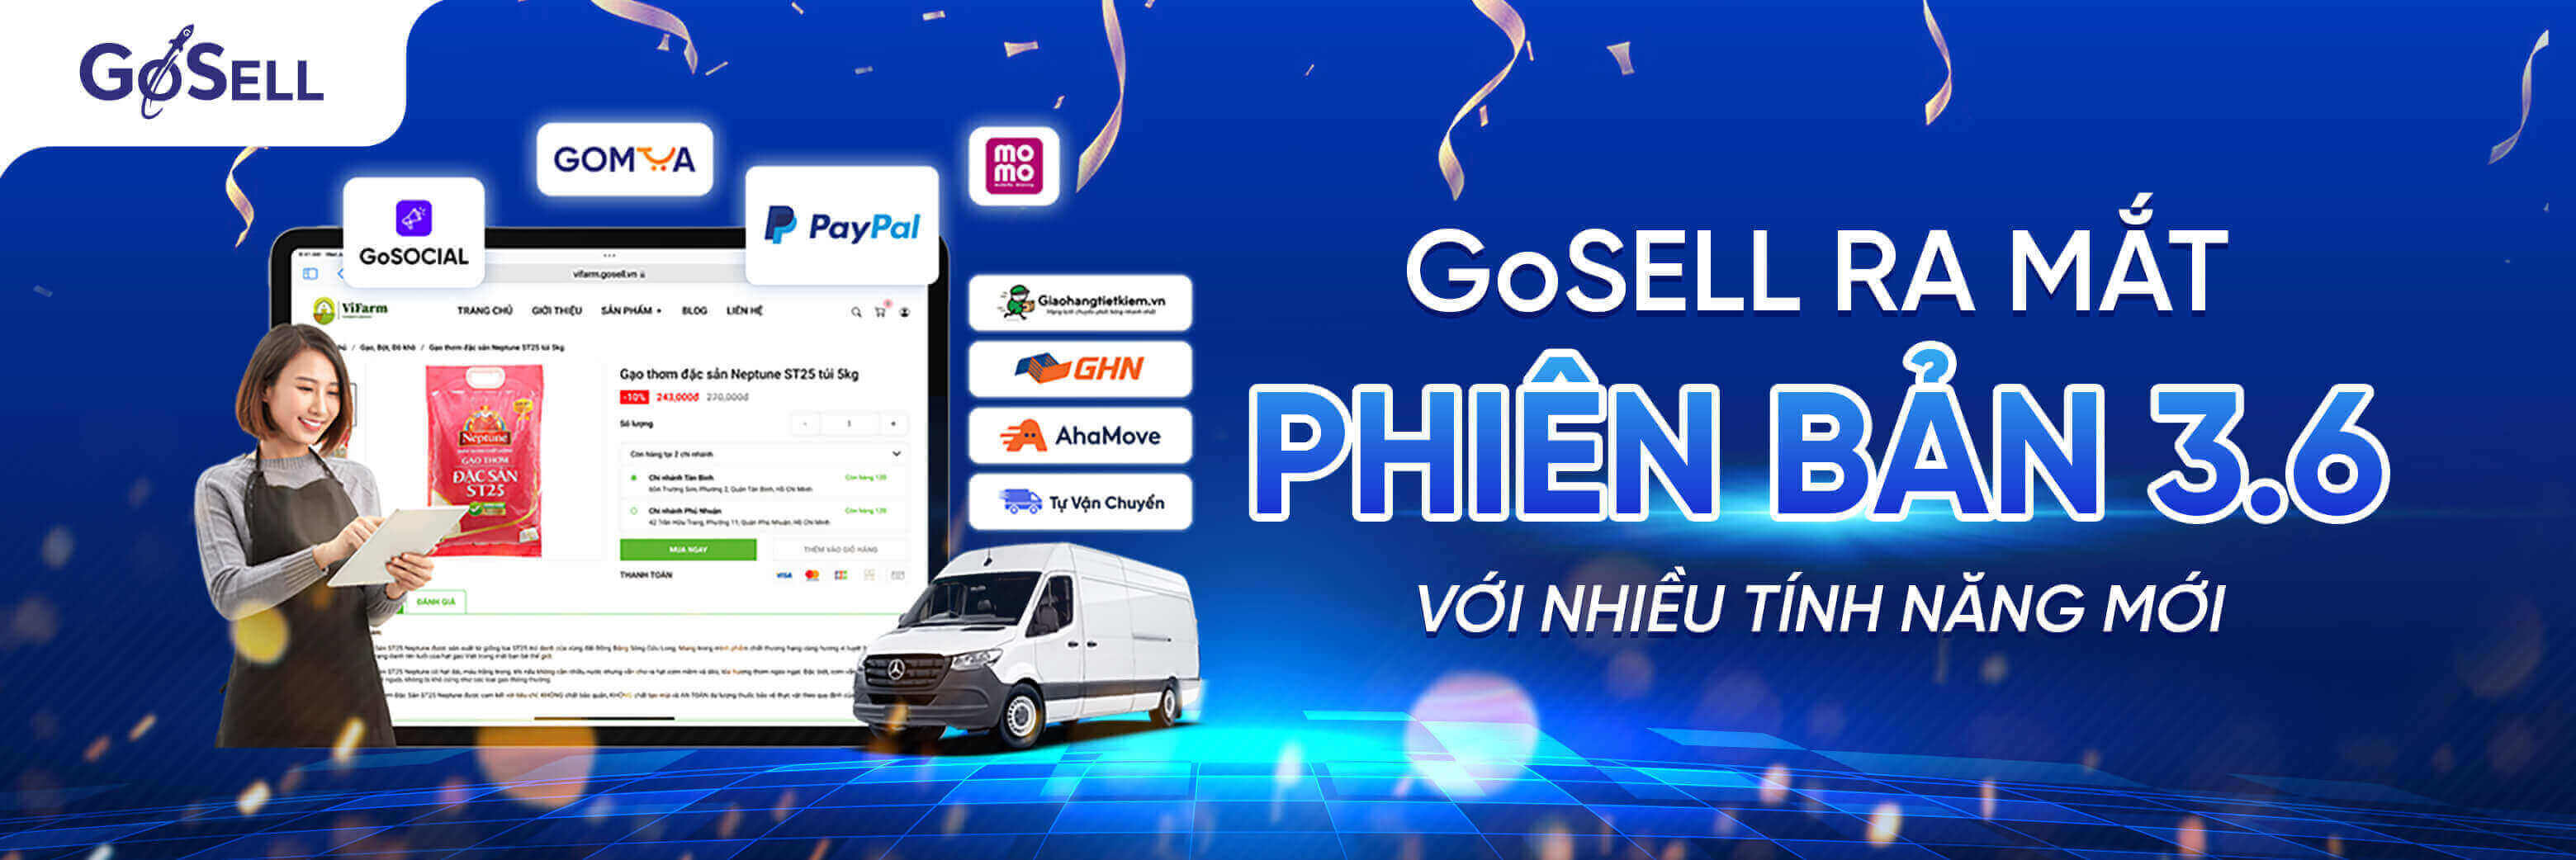 GoSell ra mắt phiên bản 3.6